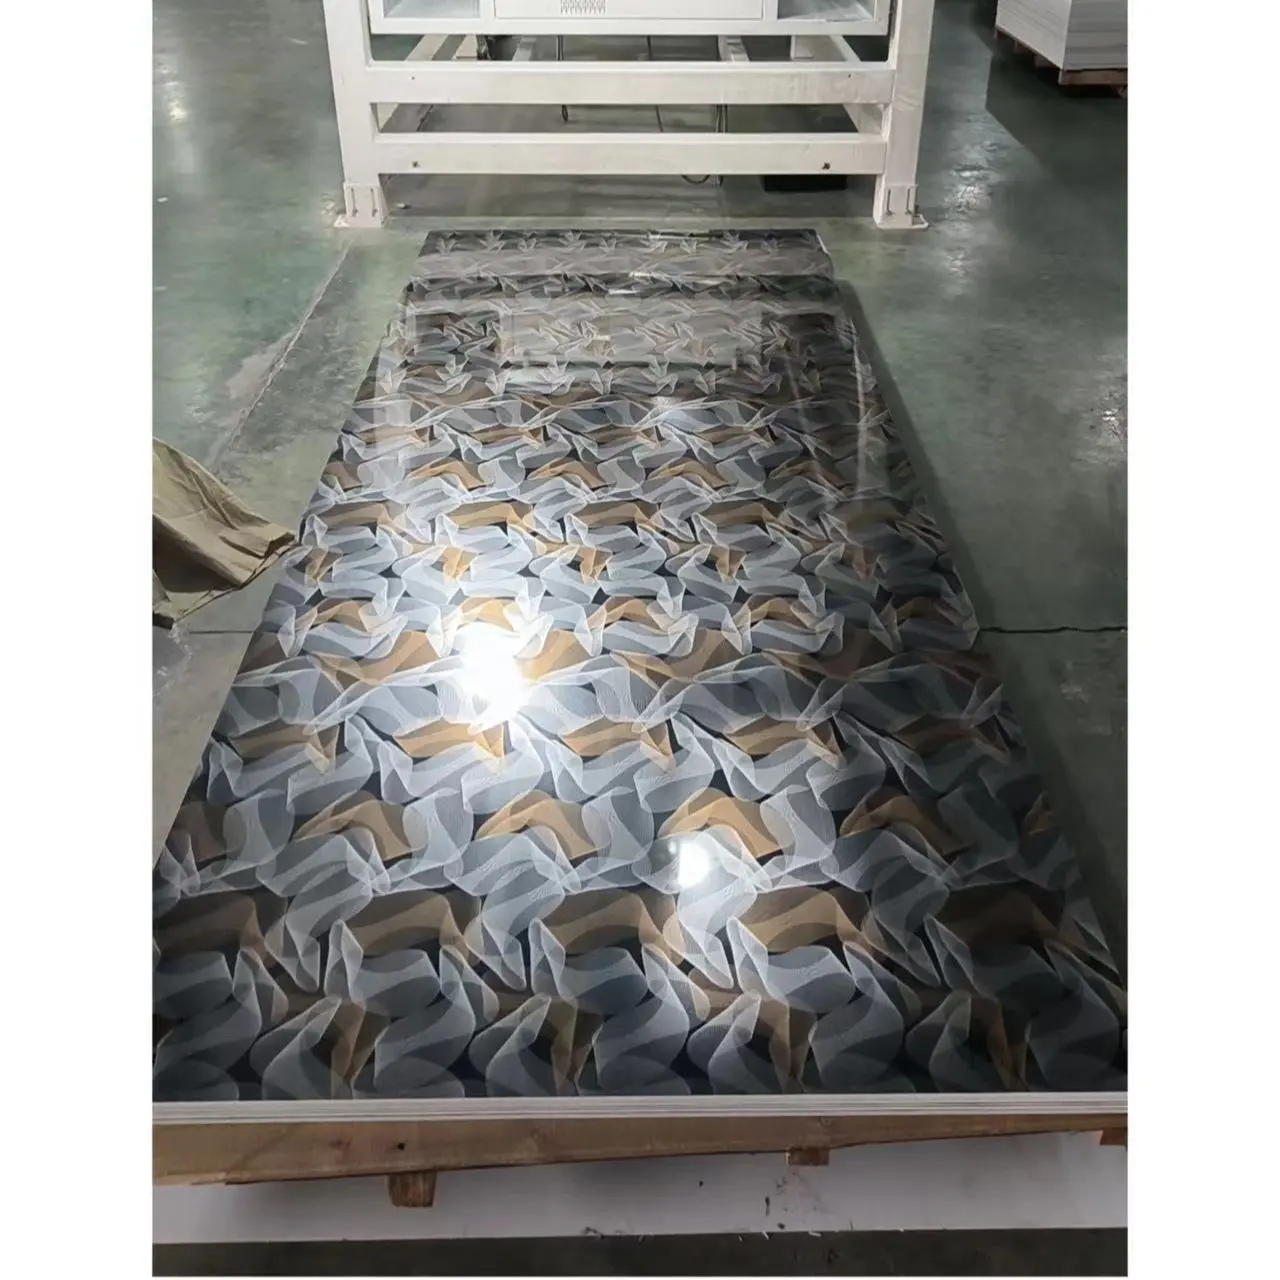 Placas de PVC para projetos em PVC UV de alta qualidade à prova d'água, folha de mármore de PVC com desenho de madeira, venda imperdível na China